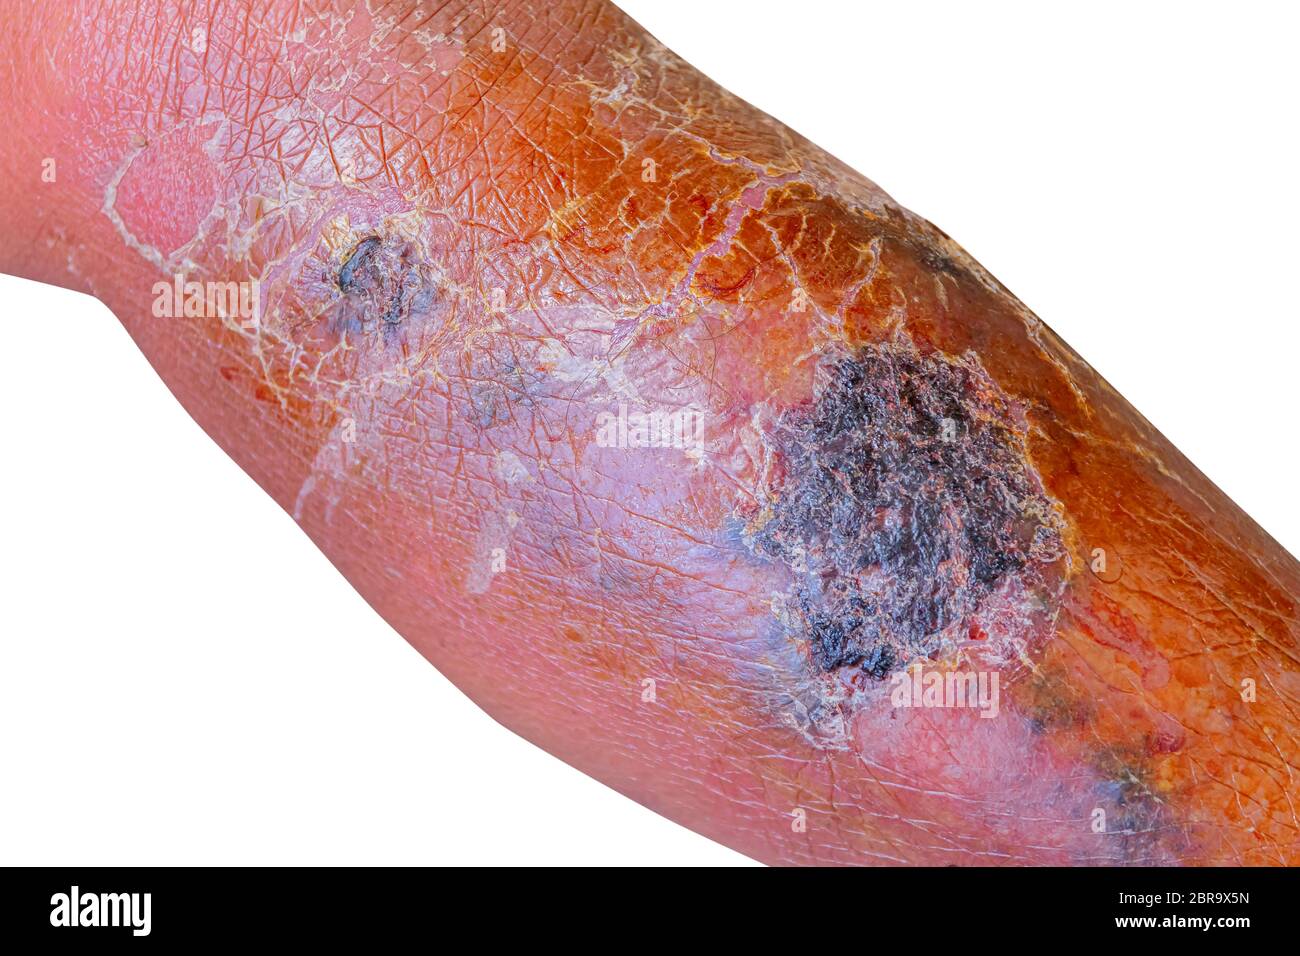 Erysipeln bakterielle Infektion unter der Haut Bein gealterten Menschen auf weißem Hintergrund Stockfoto